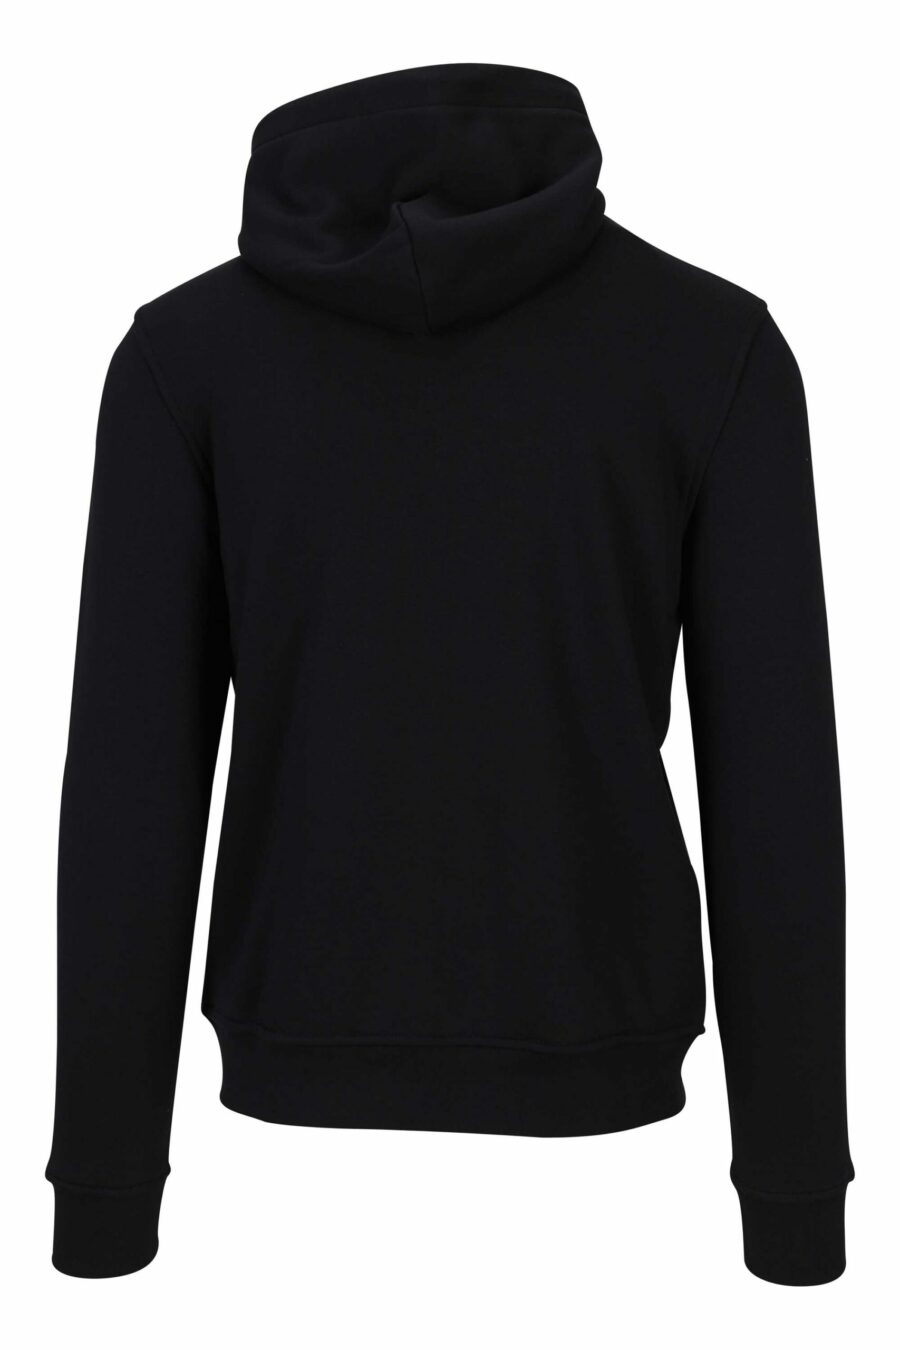 Schwarzes Kapuzensweatshirt mit Reißverschlüssen und Gummi-Mini-Logo - 4062226653459 1 1 skaliert